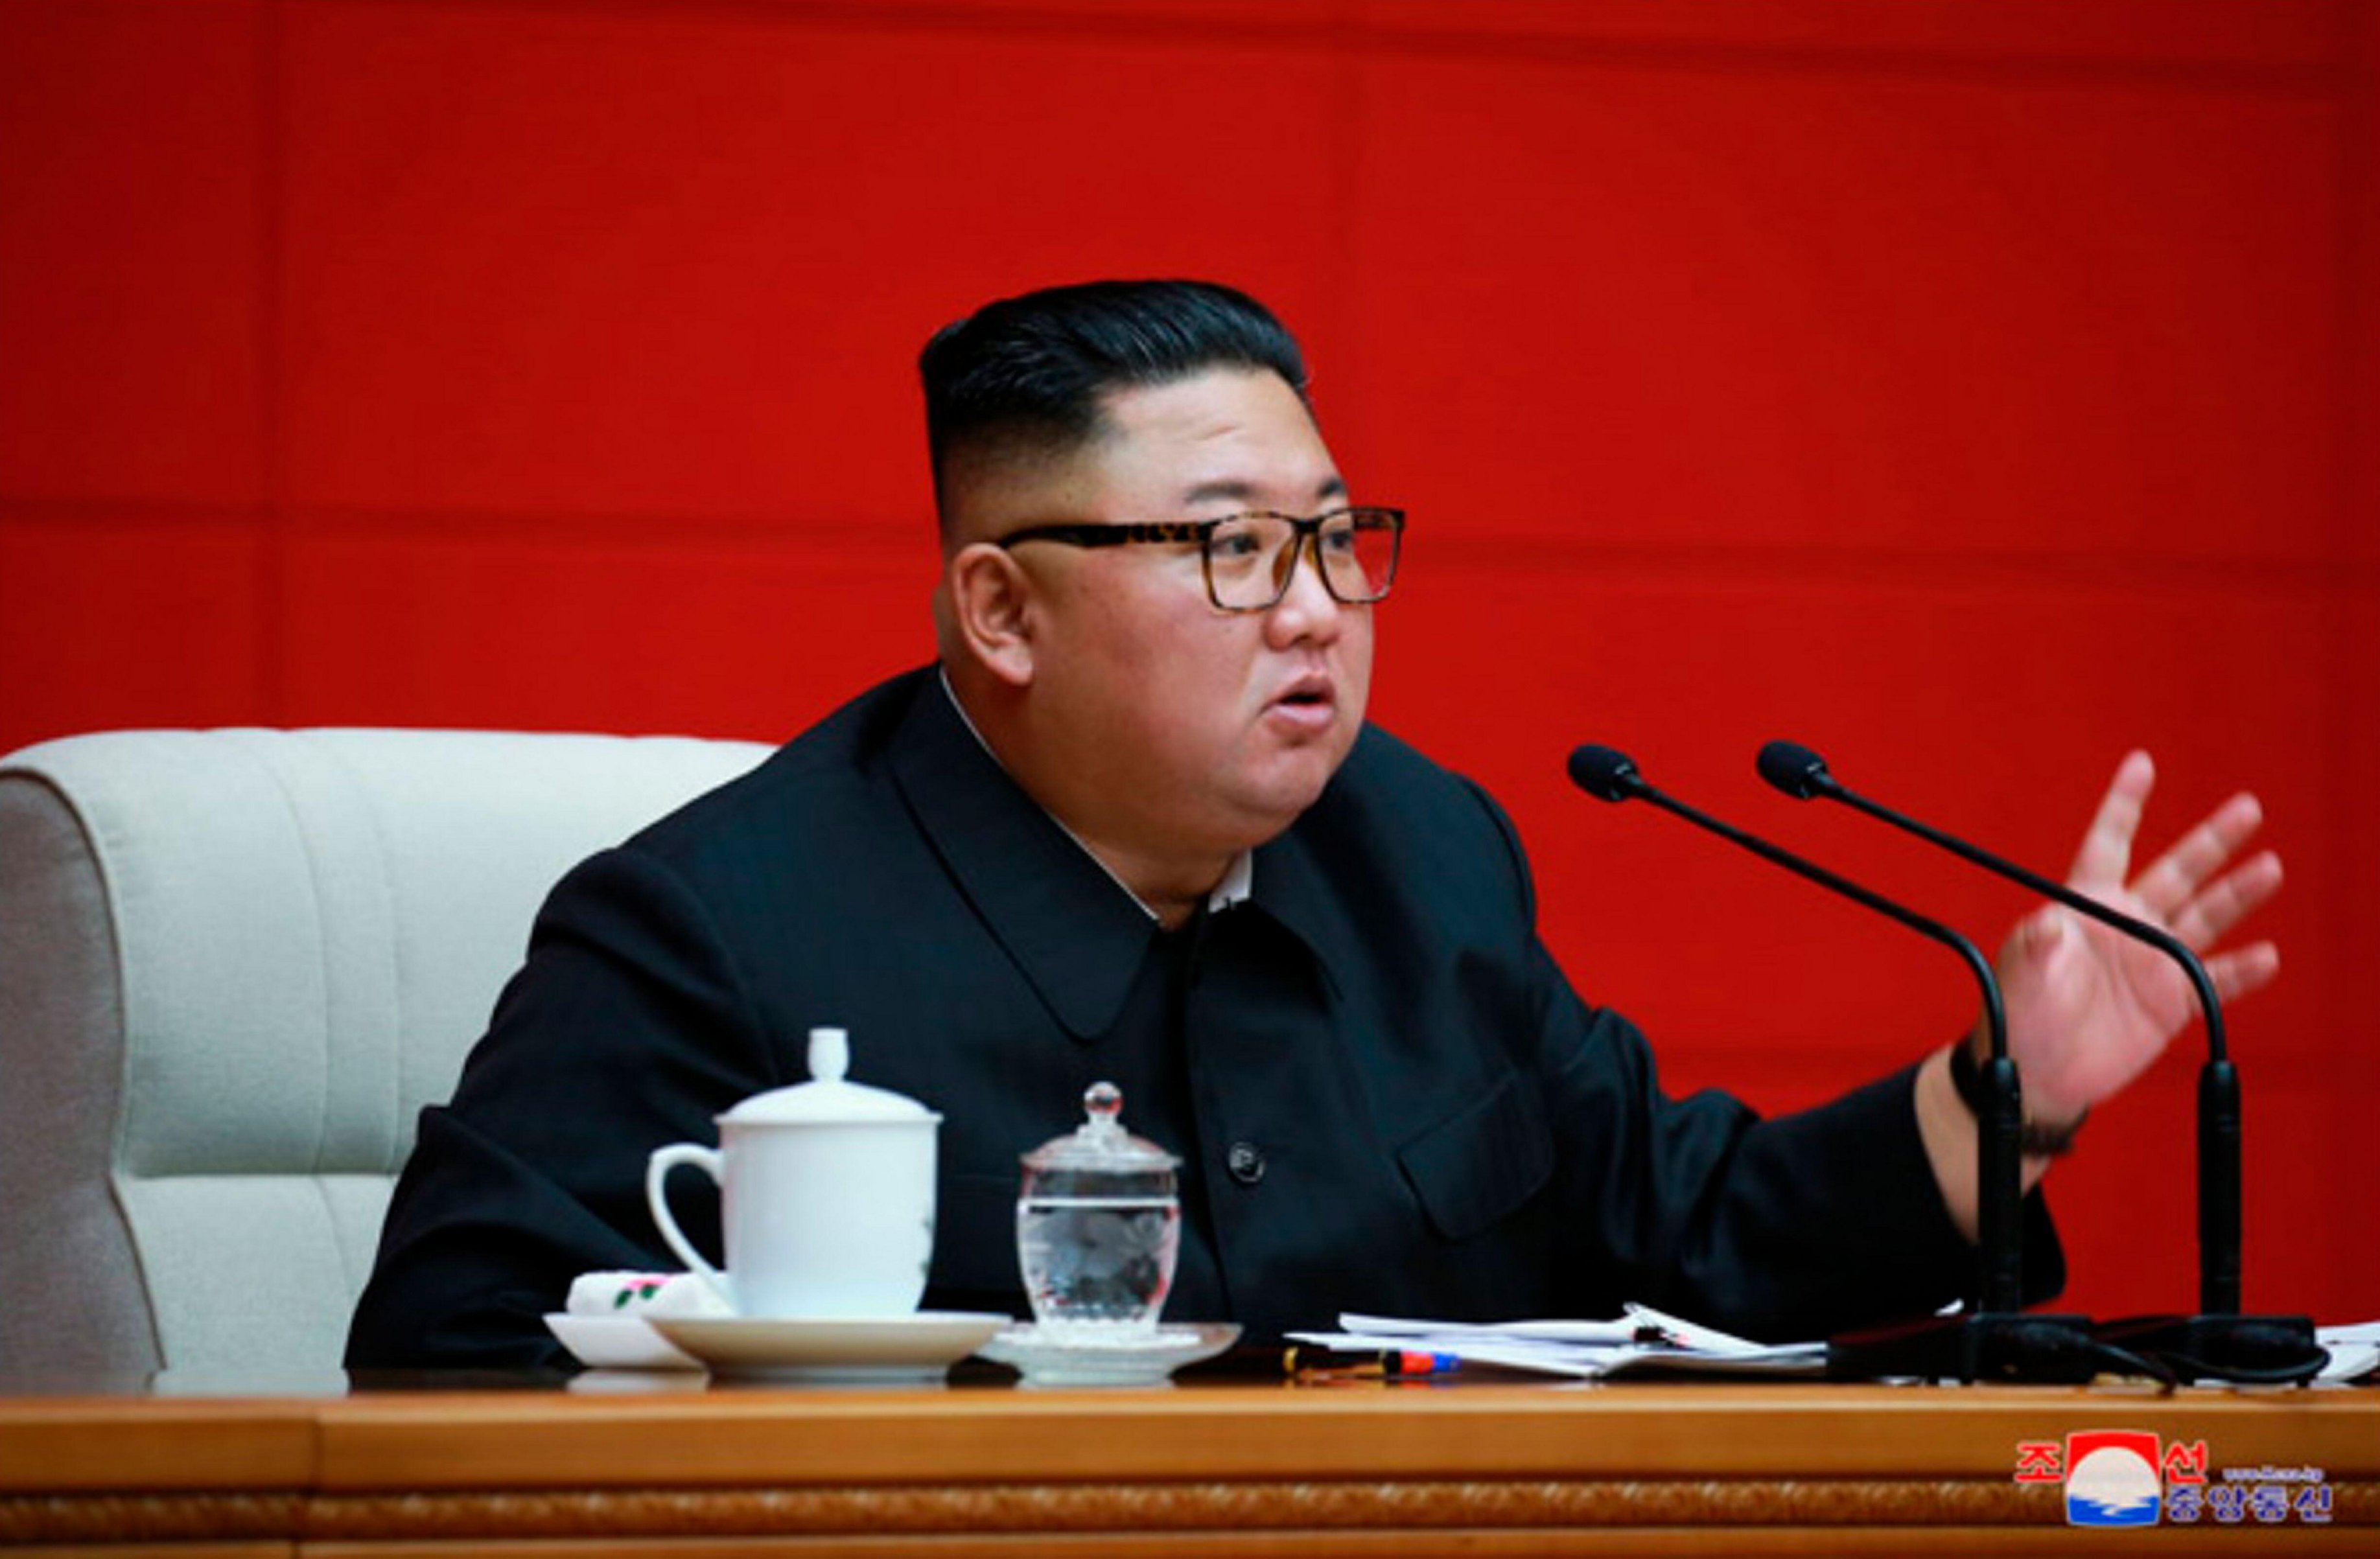 Kim Jong-un : le dictateur intime aux Nord-Coréens de... manger leurs chiens !